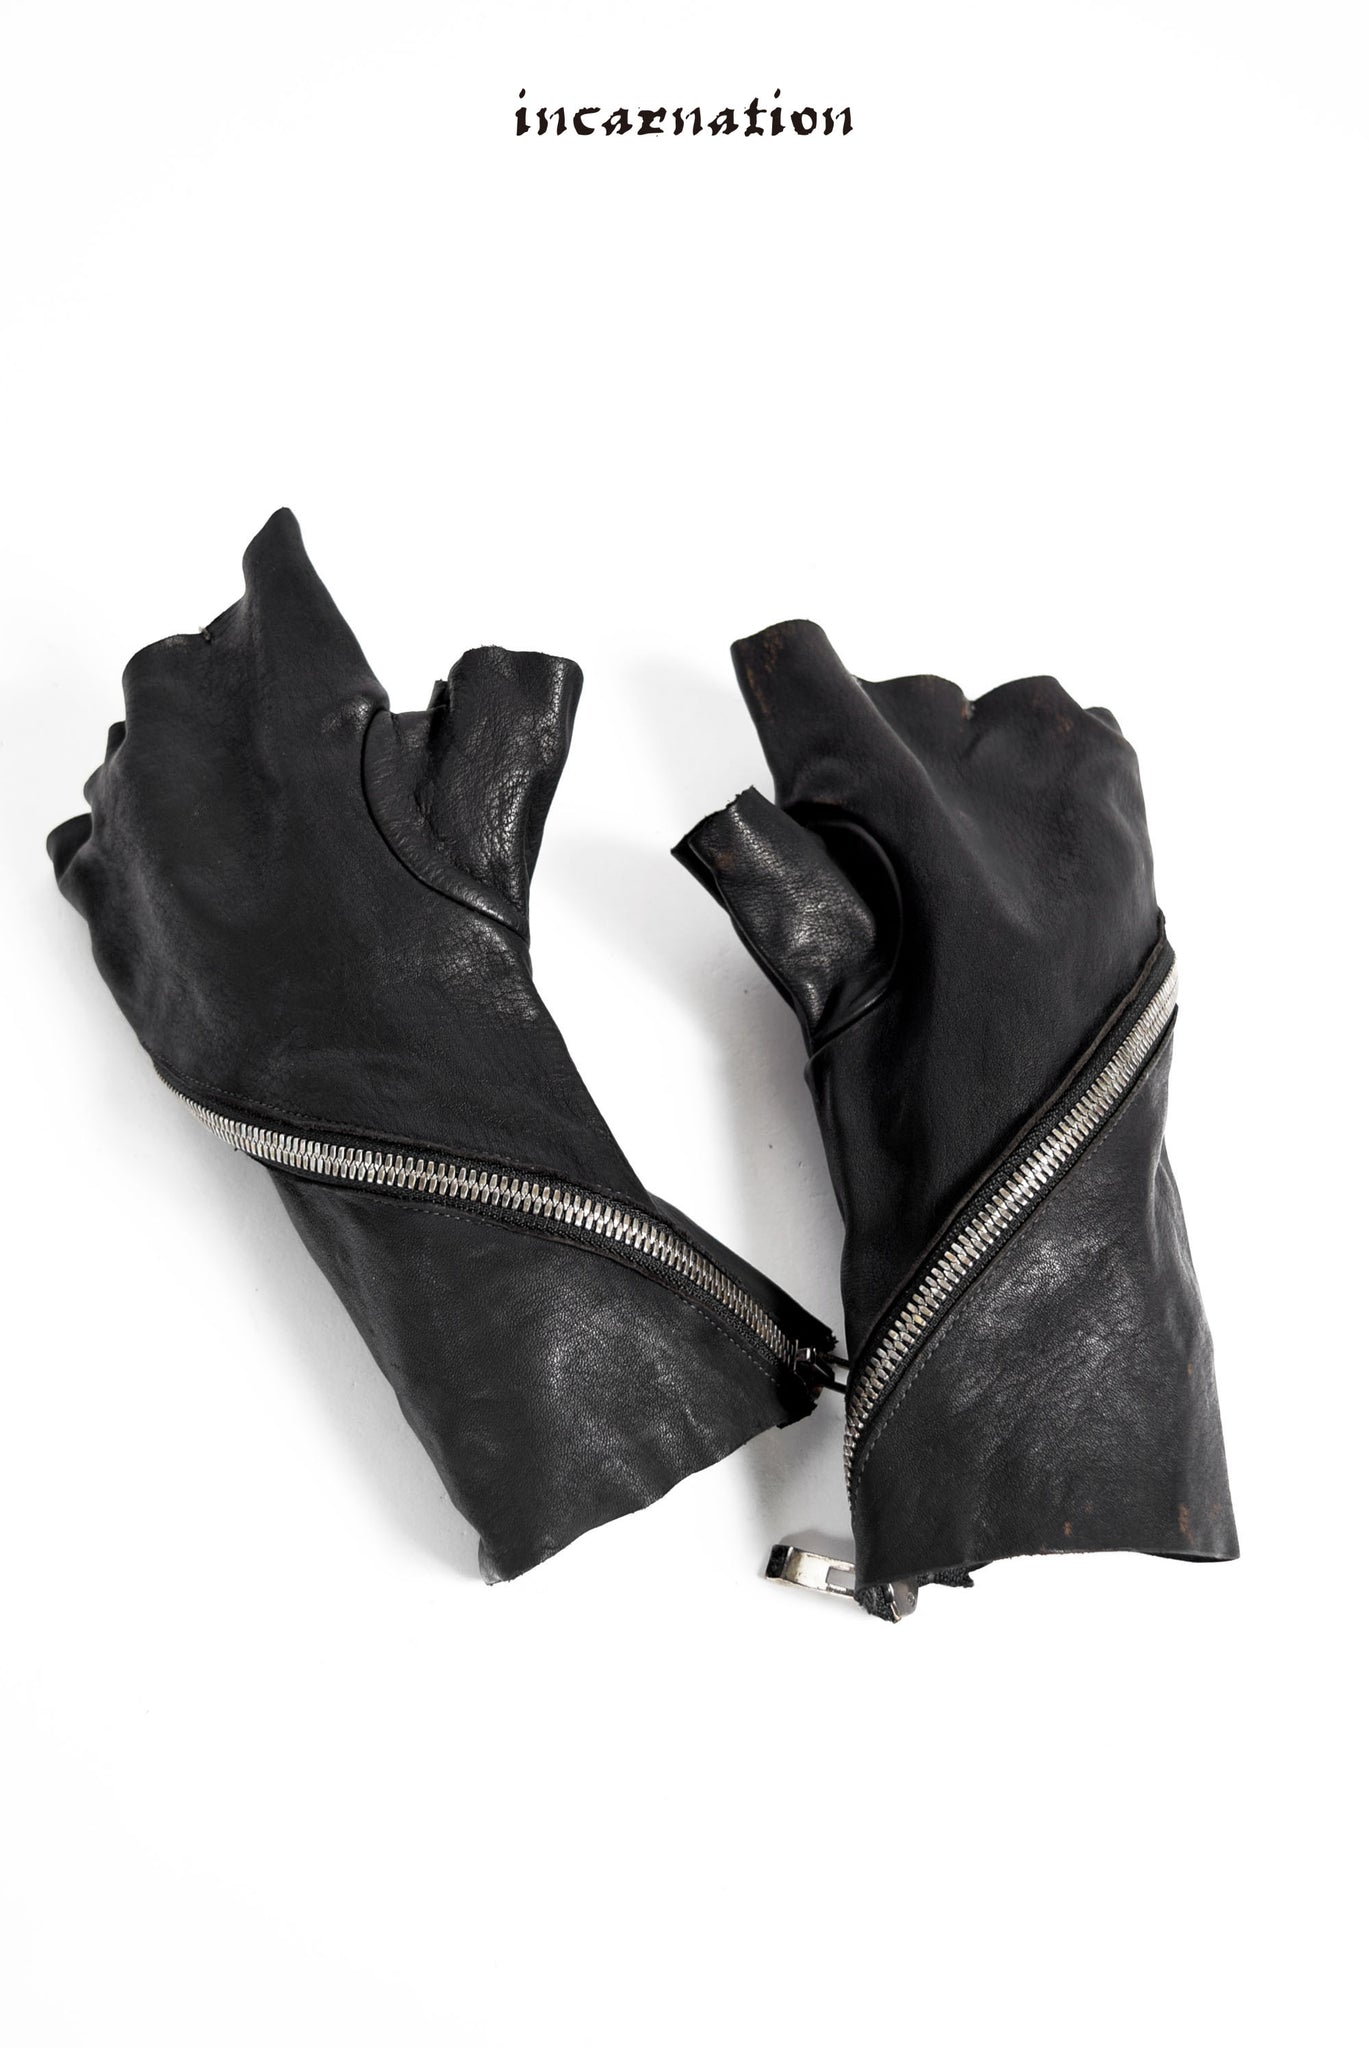 incarnation VITELLO SPALLE CONCIAVEGETALE(CALF SHOULDER FULL VEGE SOFT) gloves bias zip lined